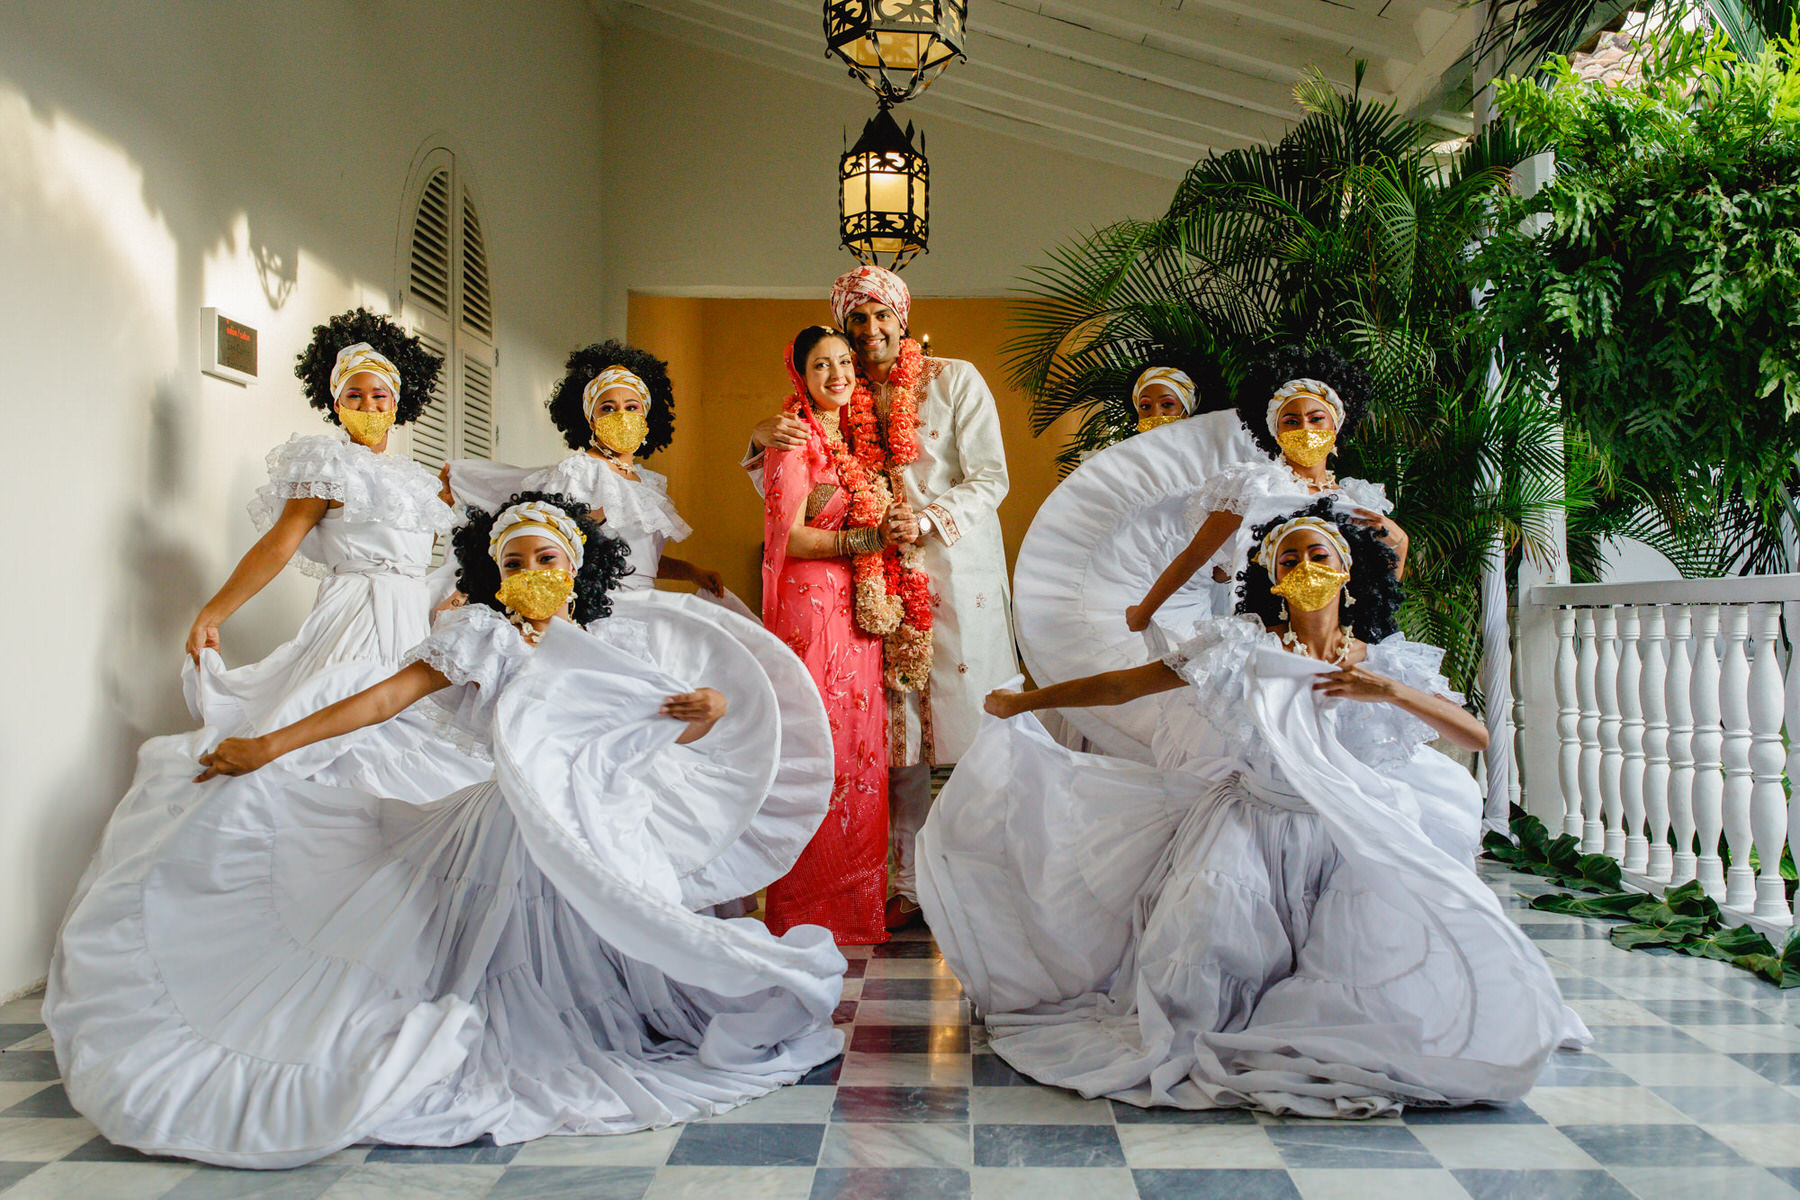 Grupo Ekobios in Indian wedding in Cartagena de Indias